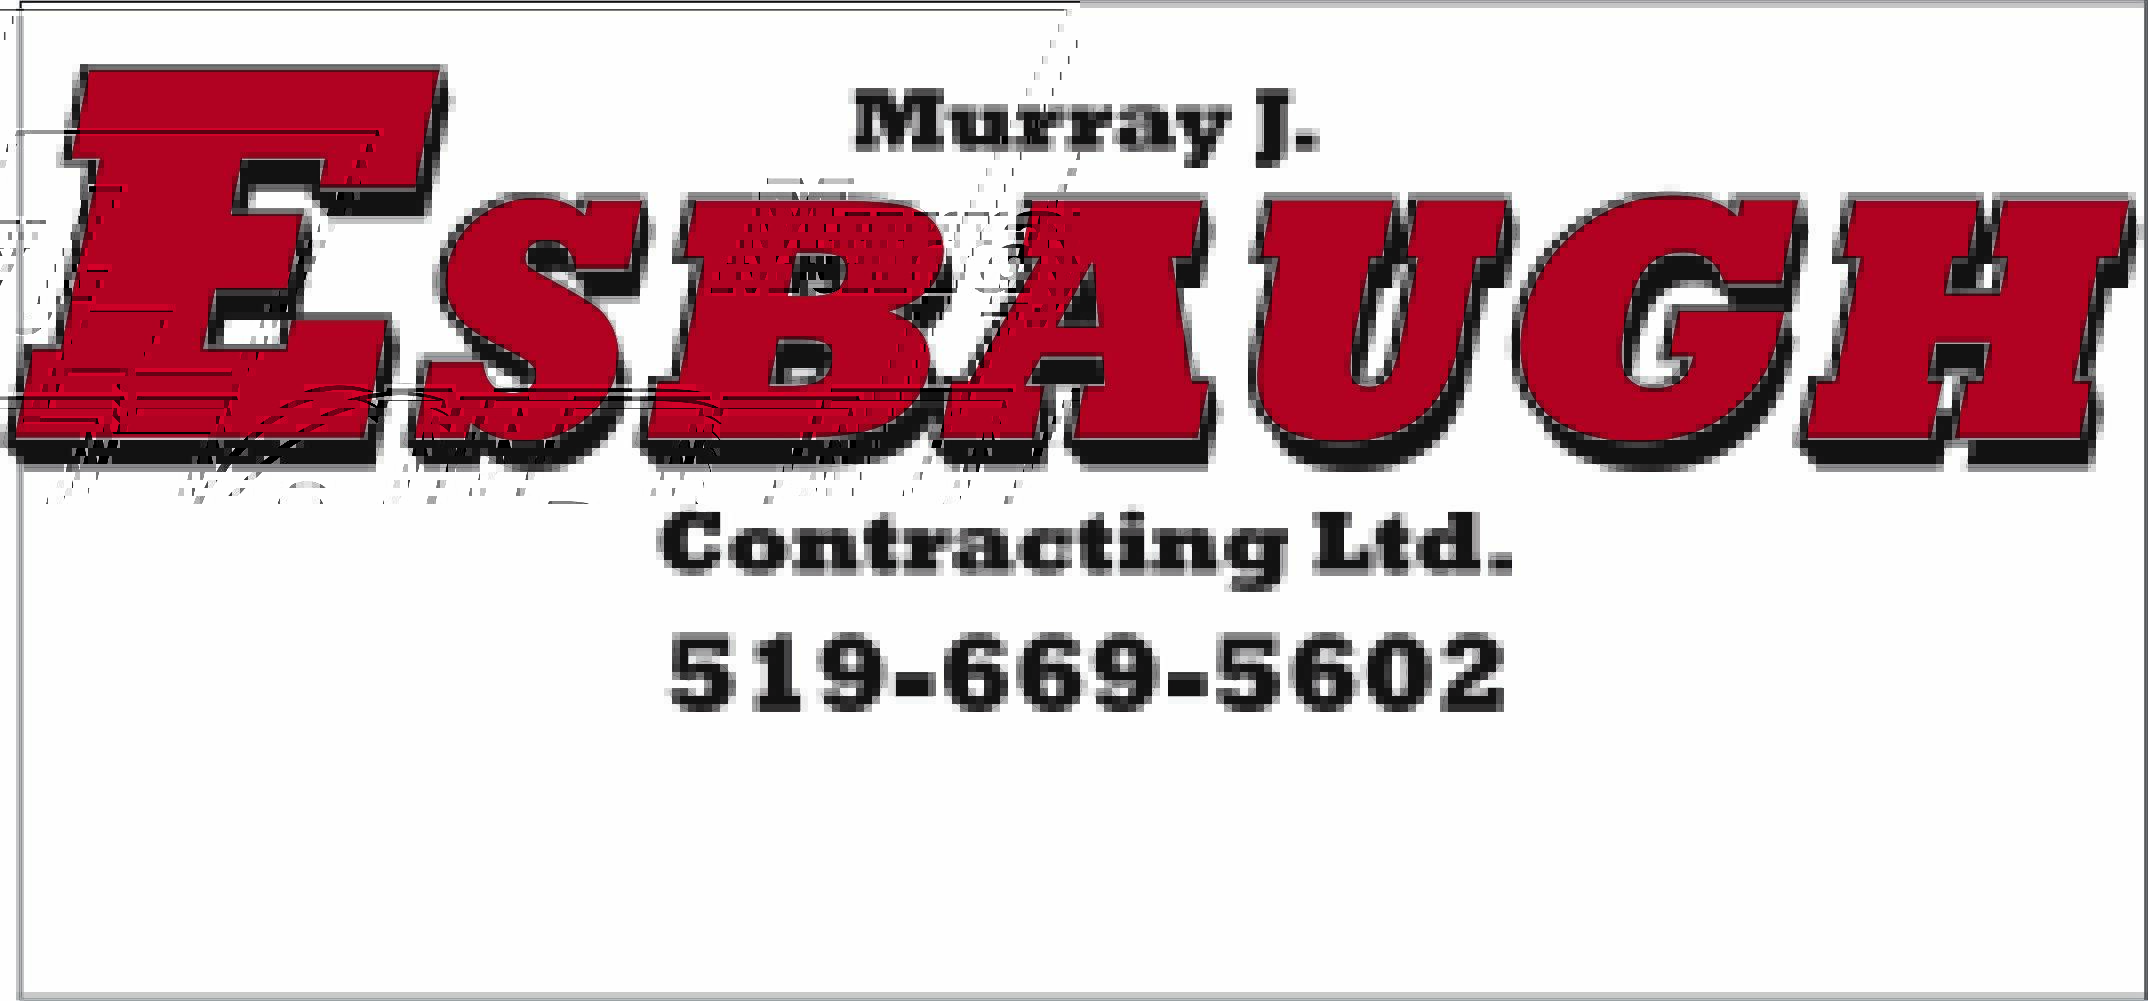 Esbaugh Contracting Ltd.